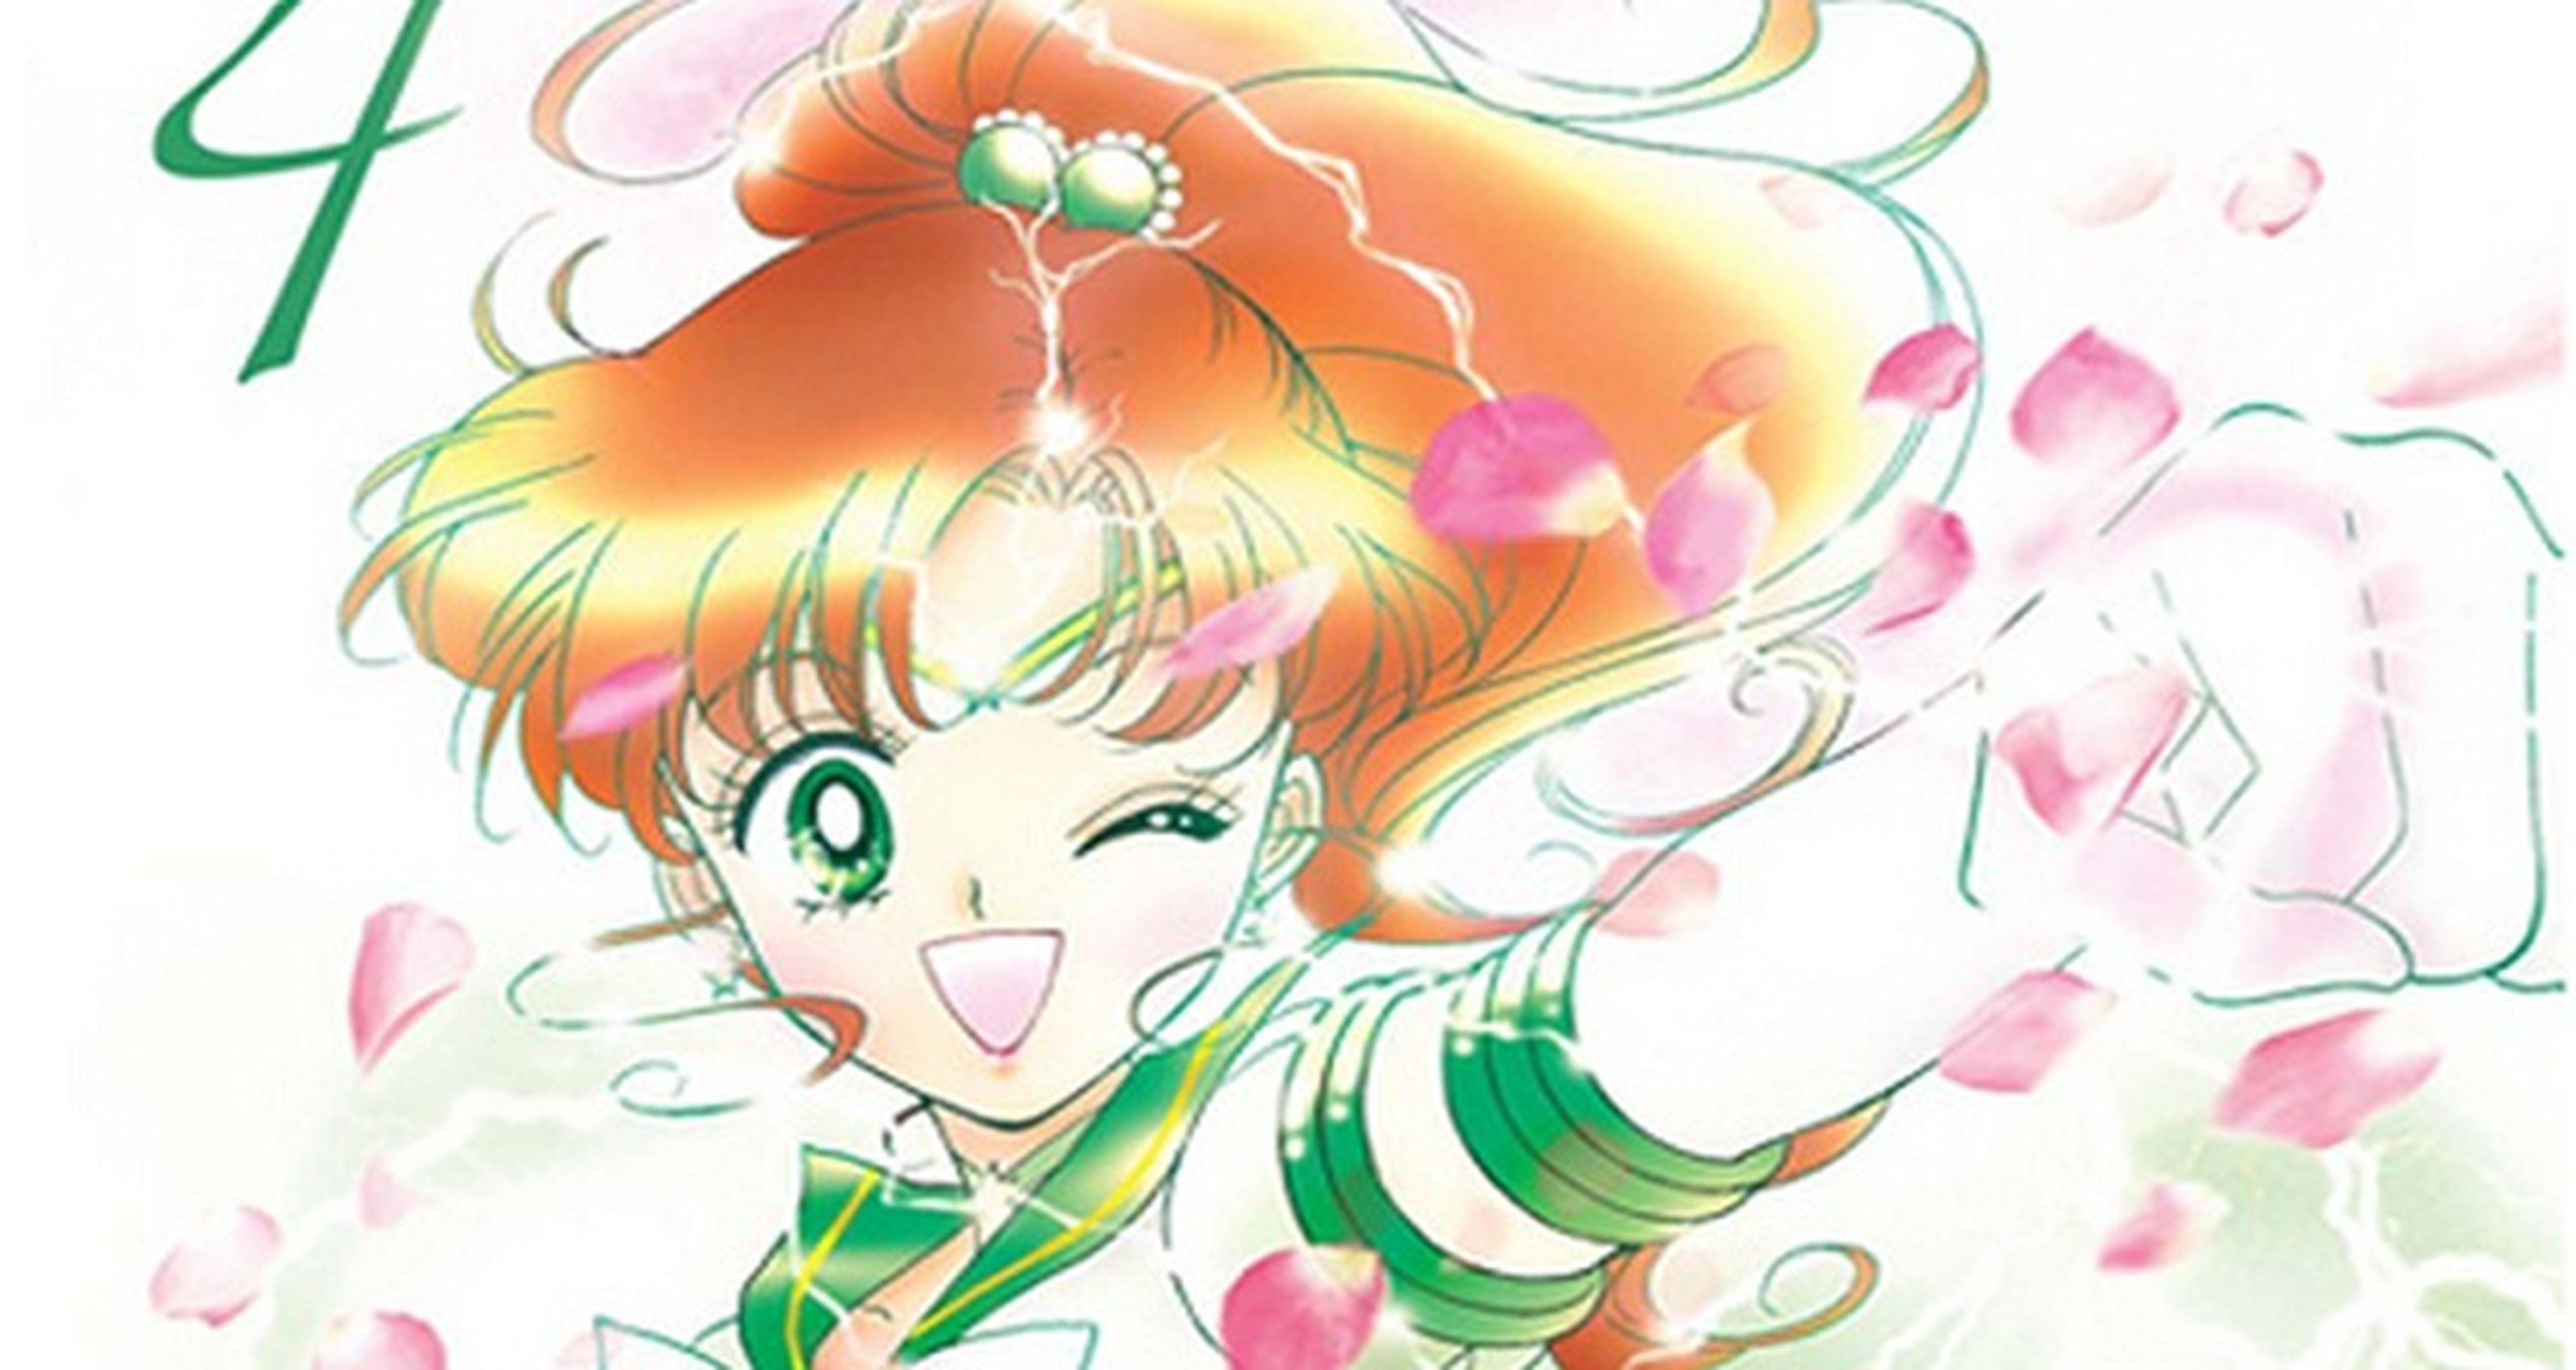 Retrasado el tomo 4 de Sailor Moon